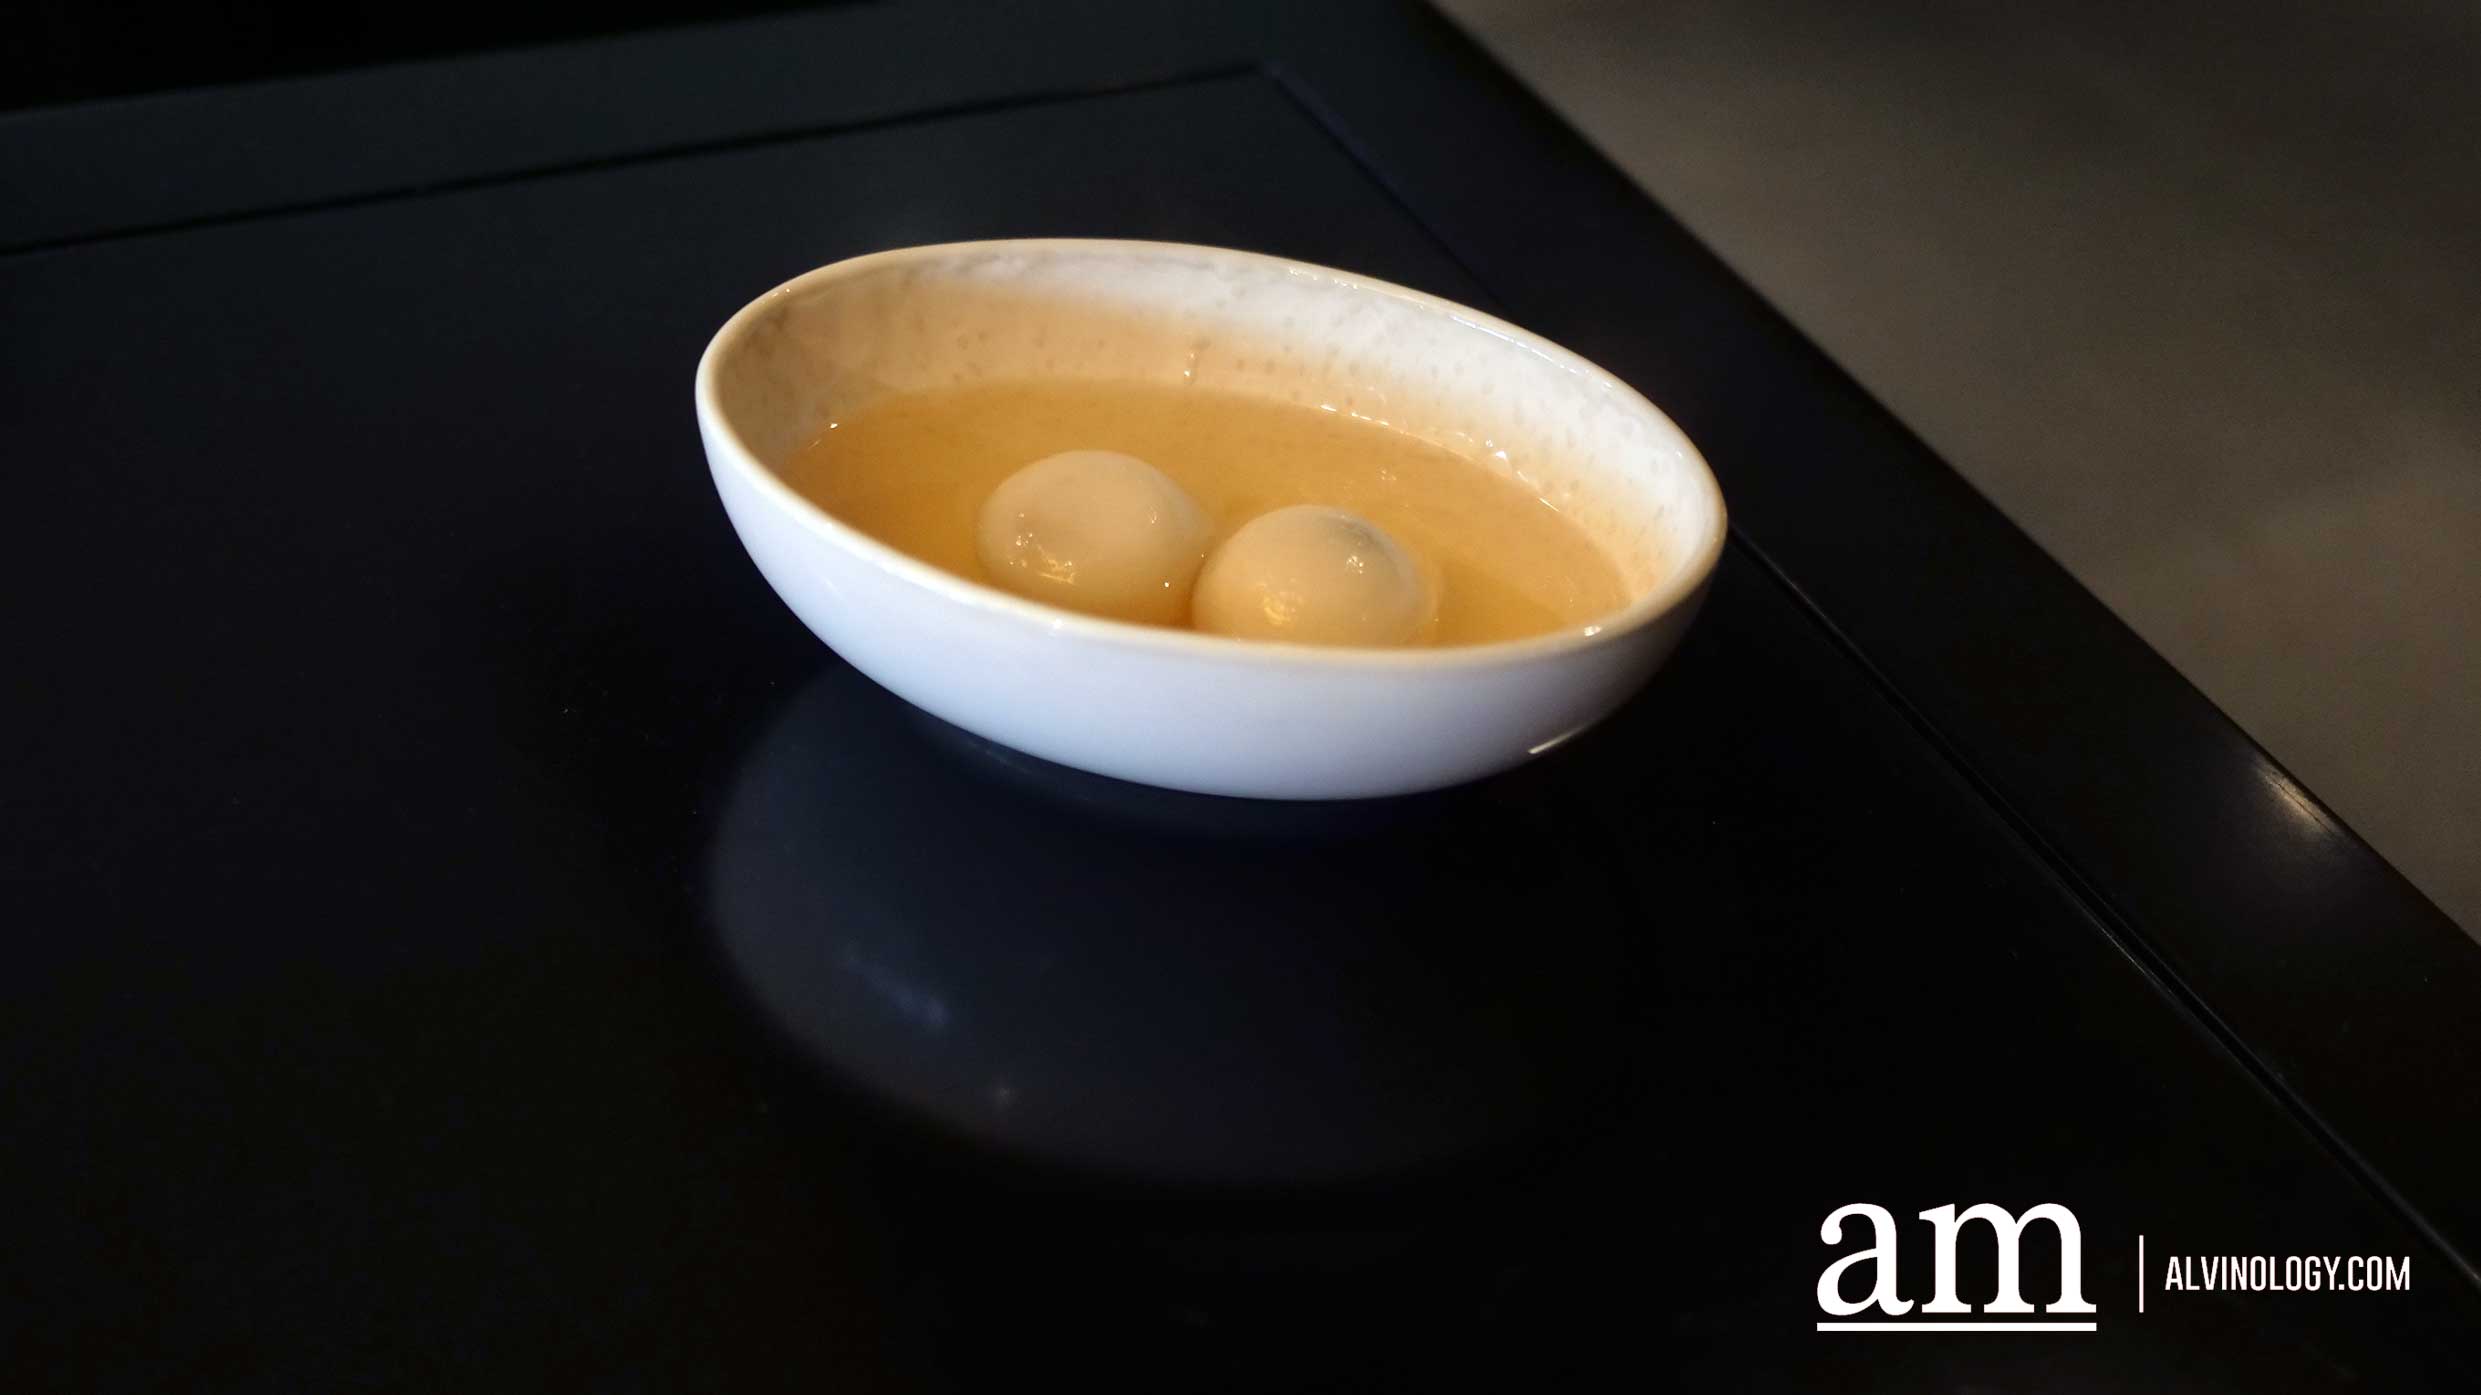 Tang Yuan in Ginger Tea - choice of black sesame or peanut ($8)